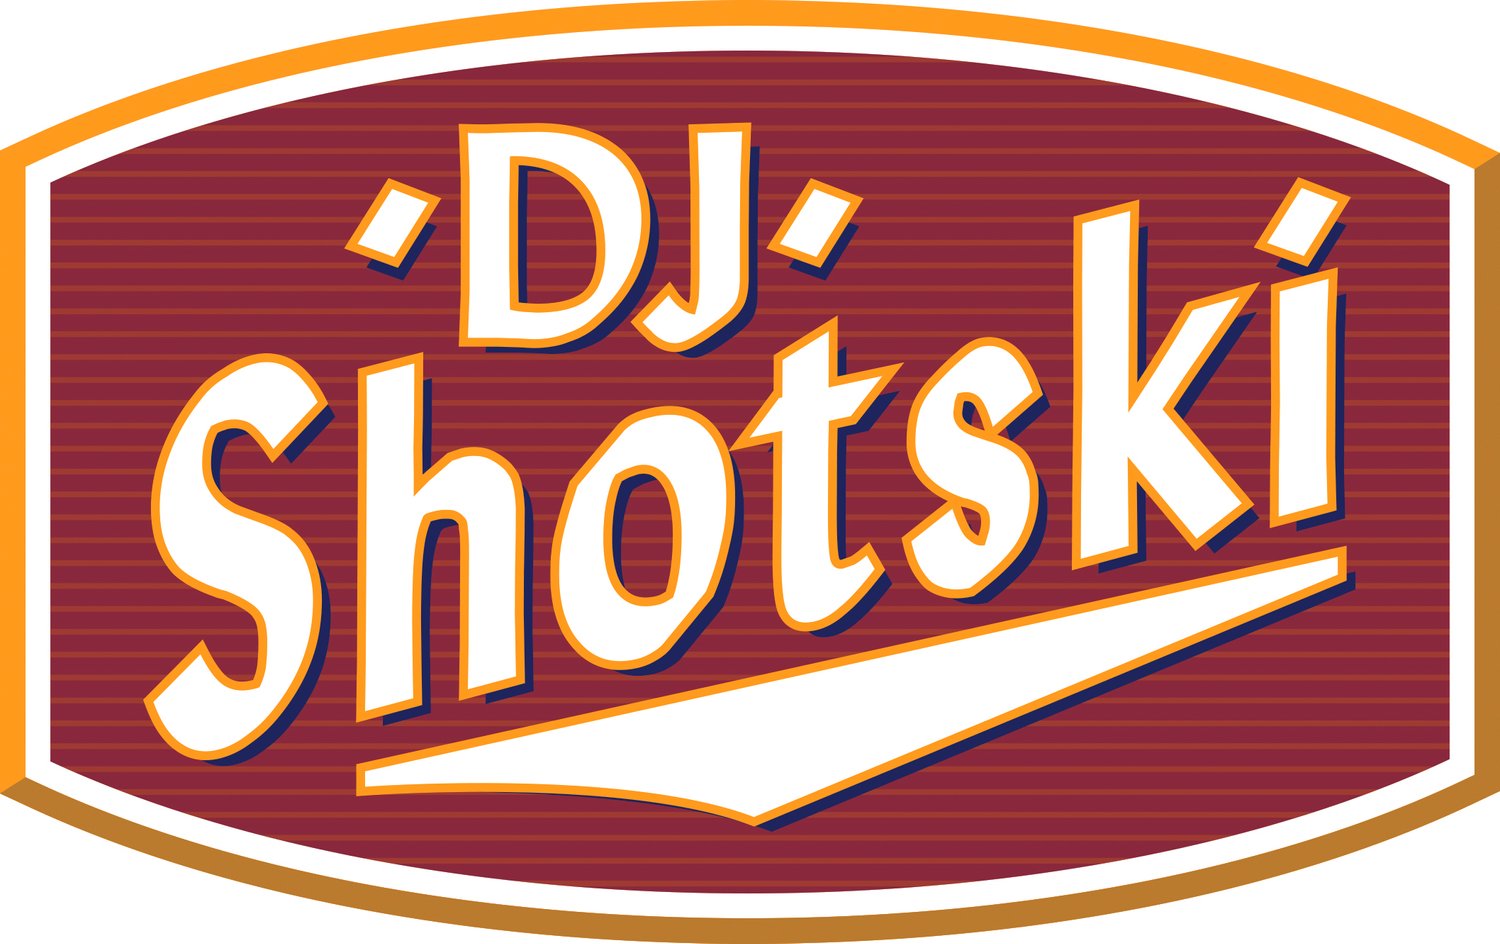 DJ Shotski